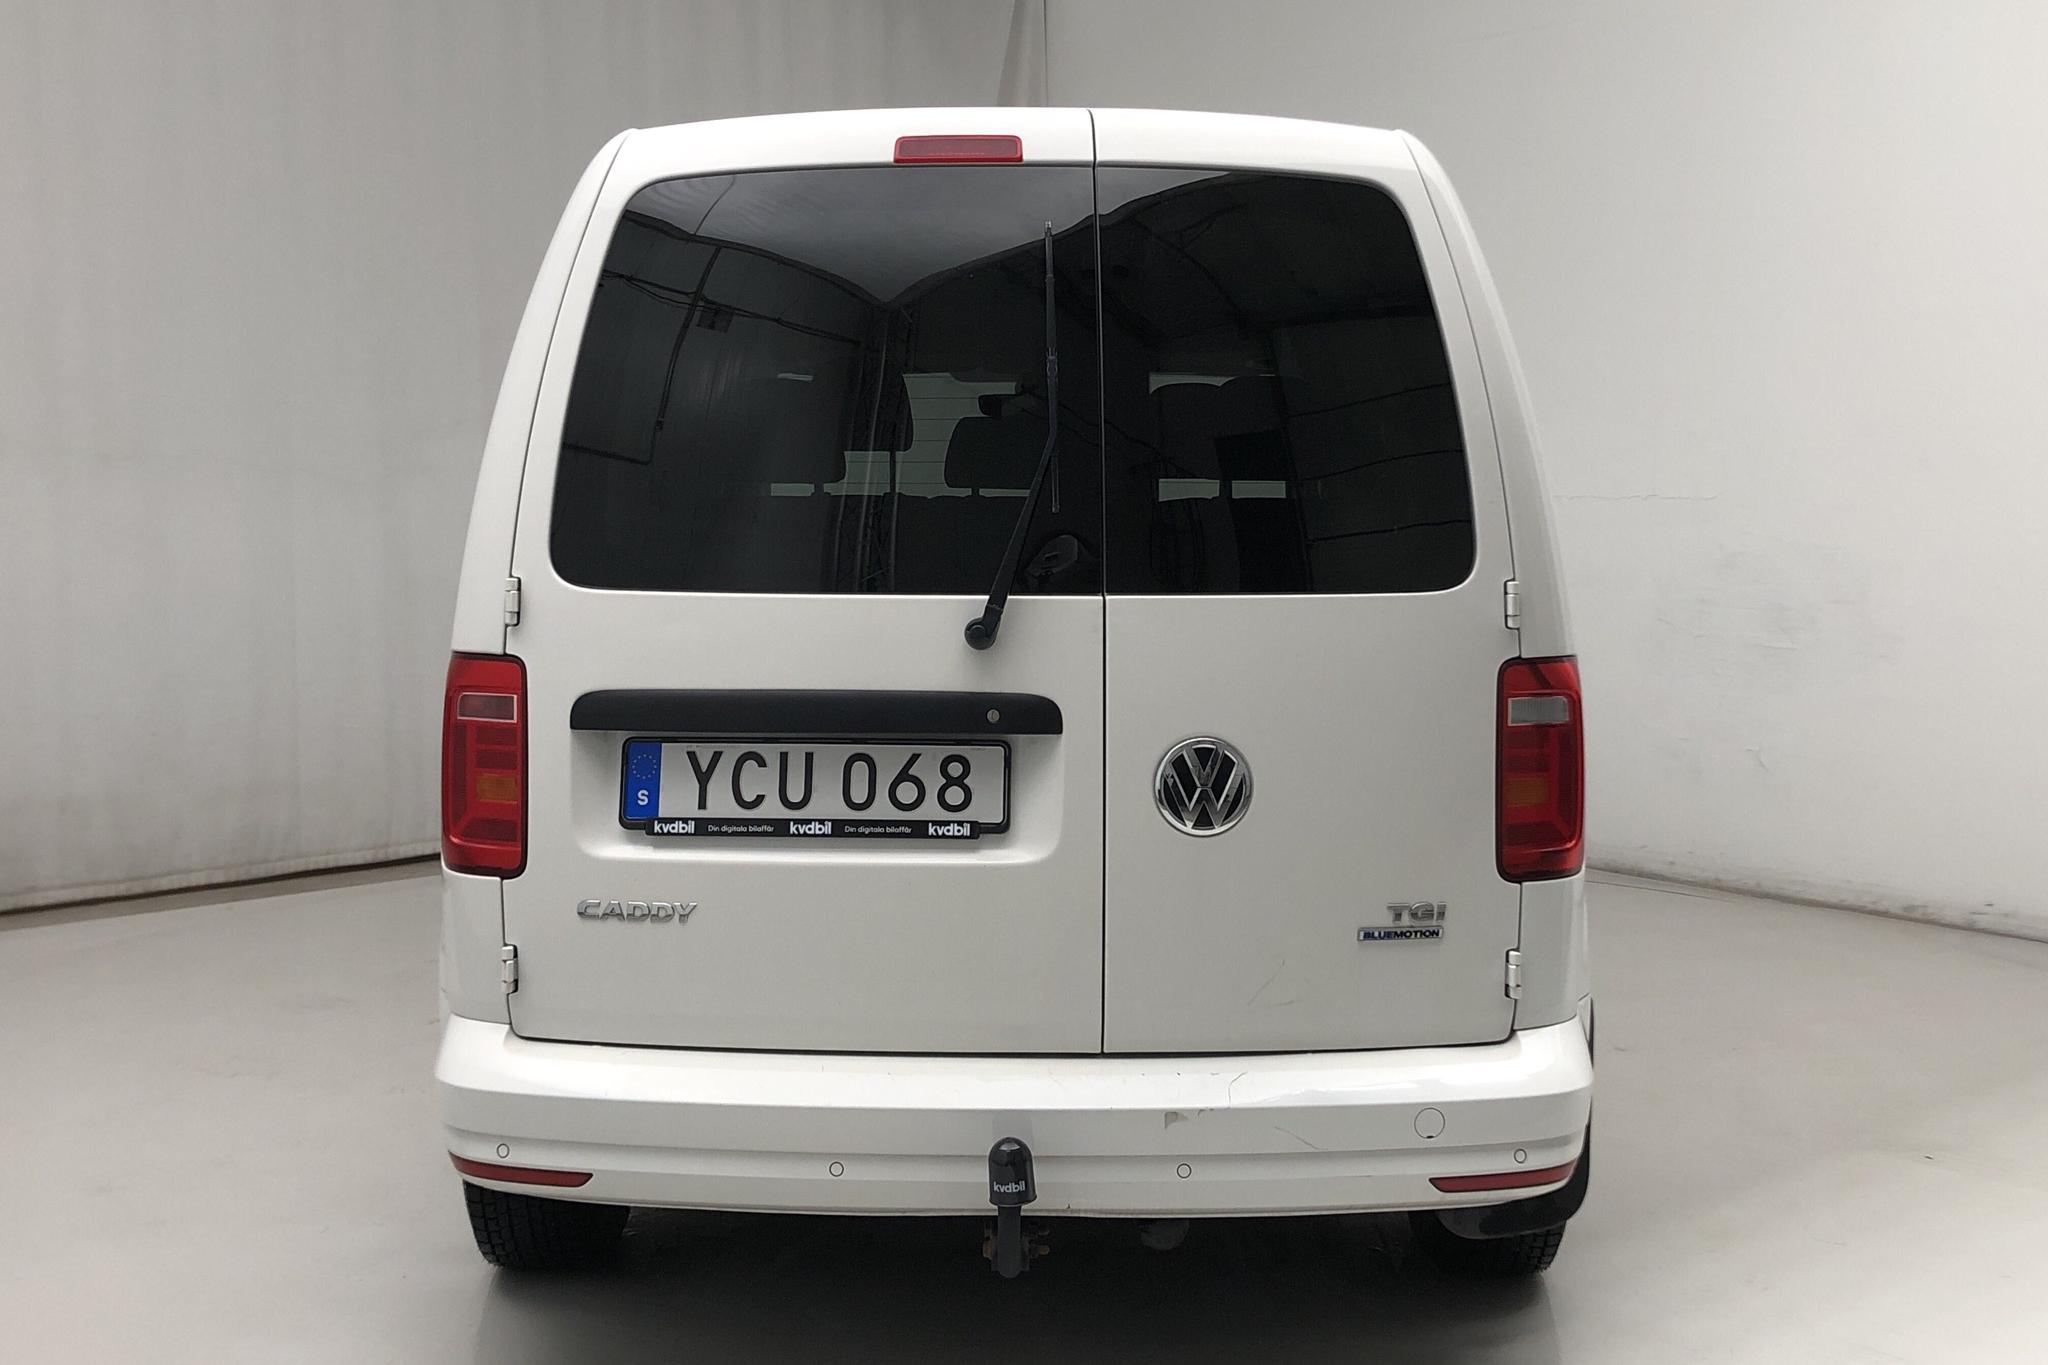 VW Caddy MPV 1.4 TGI (110hk) - 75 360 km - Manual - white - 2016